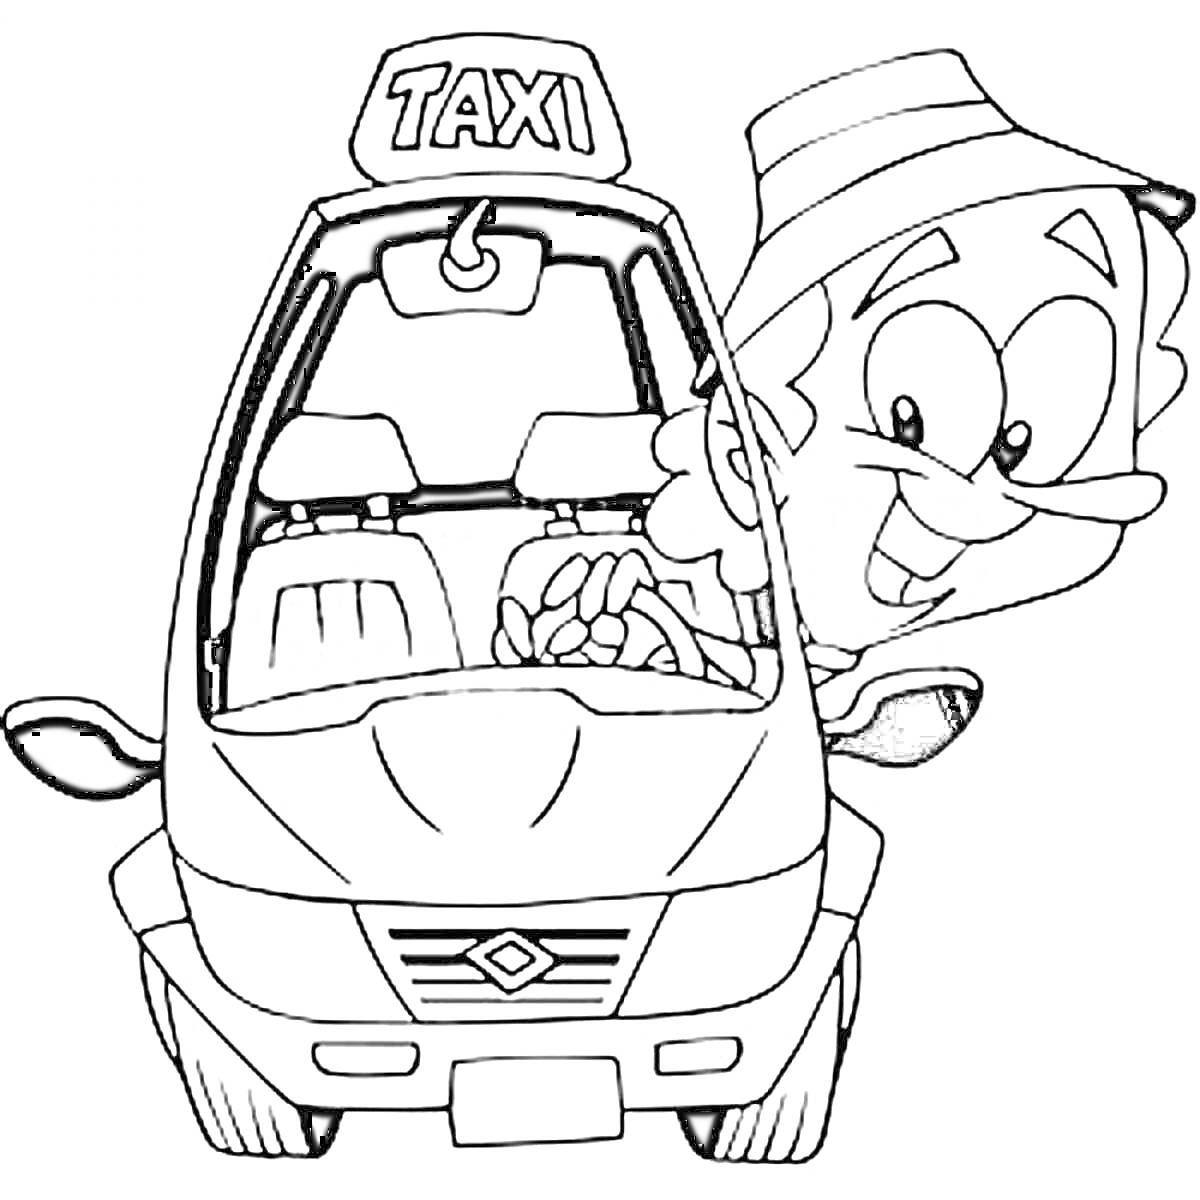 Раскраска Такси с водителем на заднем плане